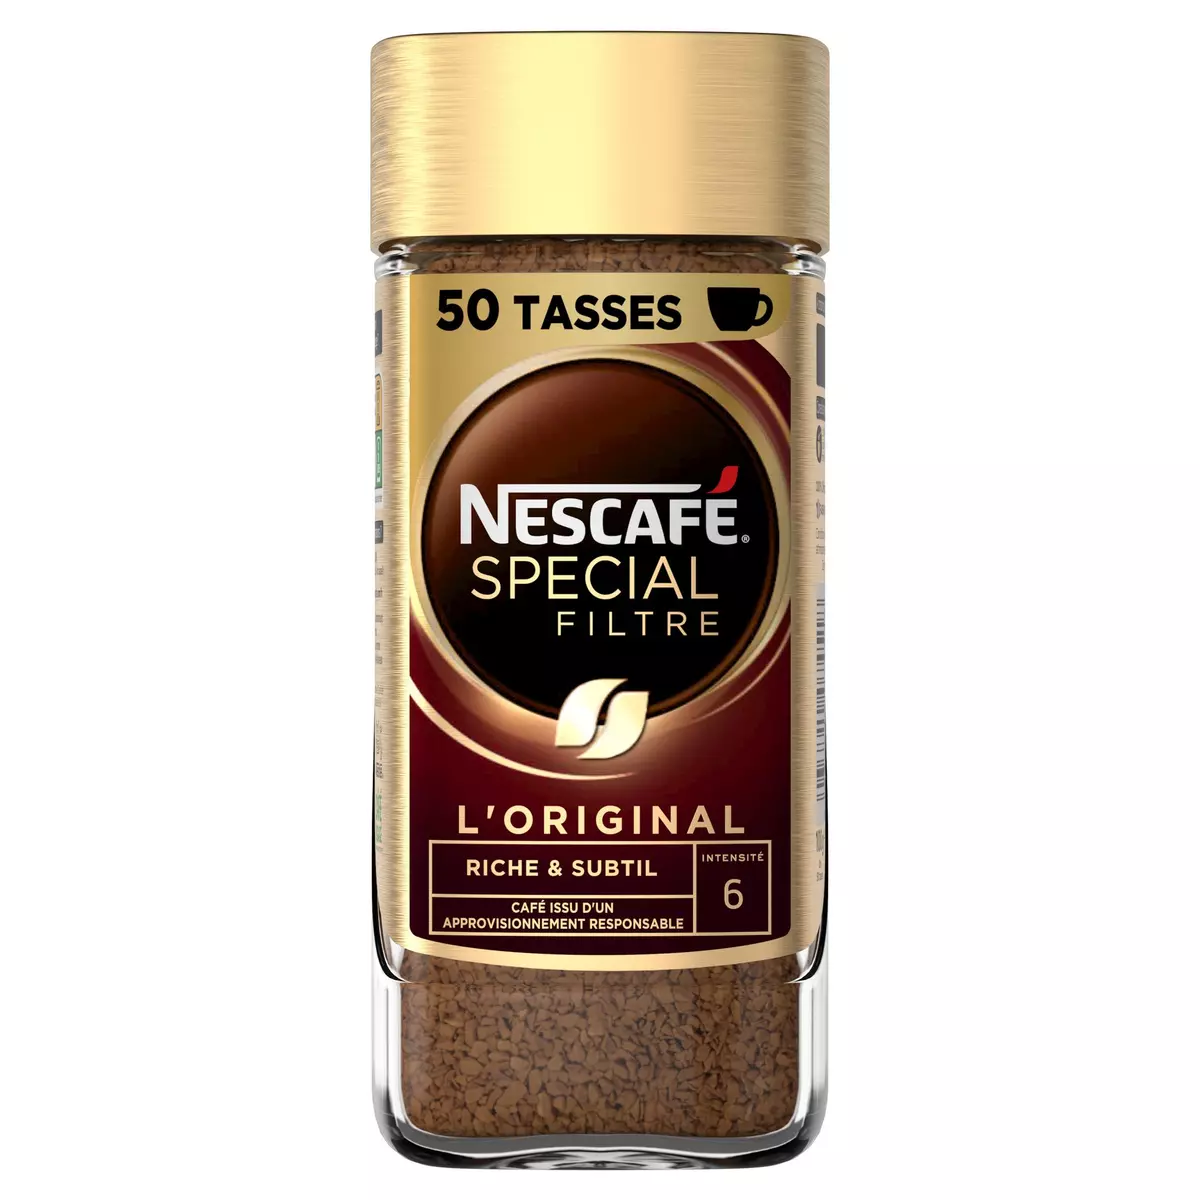 NESCAFE Café soluble spécial filtre riche et subtile 100g pas cher 